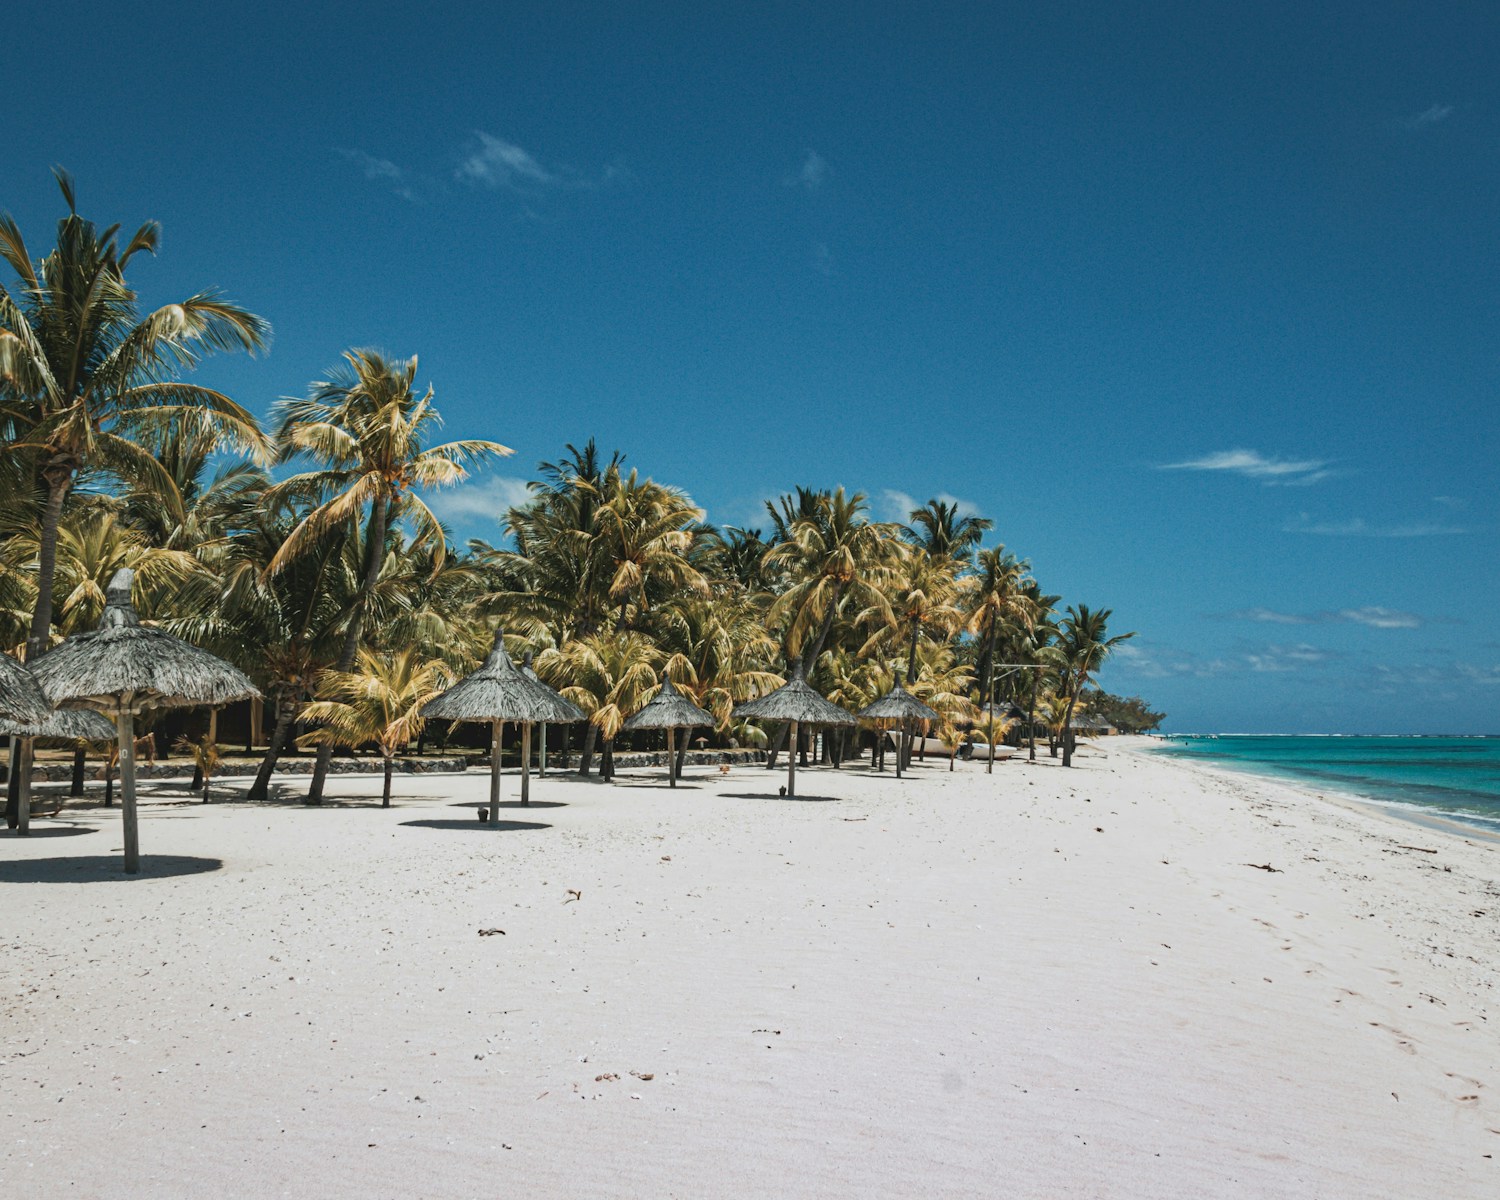 Les avantages fiscaux à l'île Maurice, un guide complet pour les investisseurs étrangers